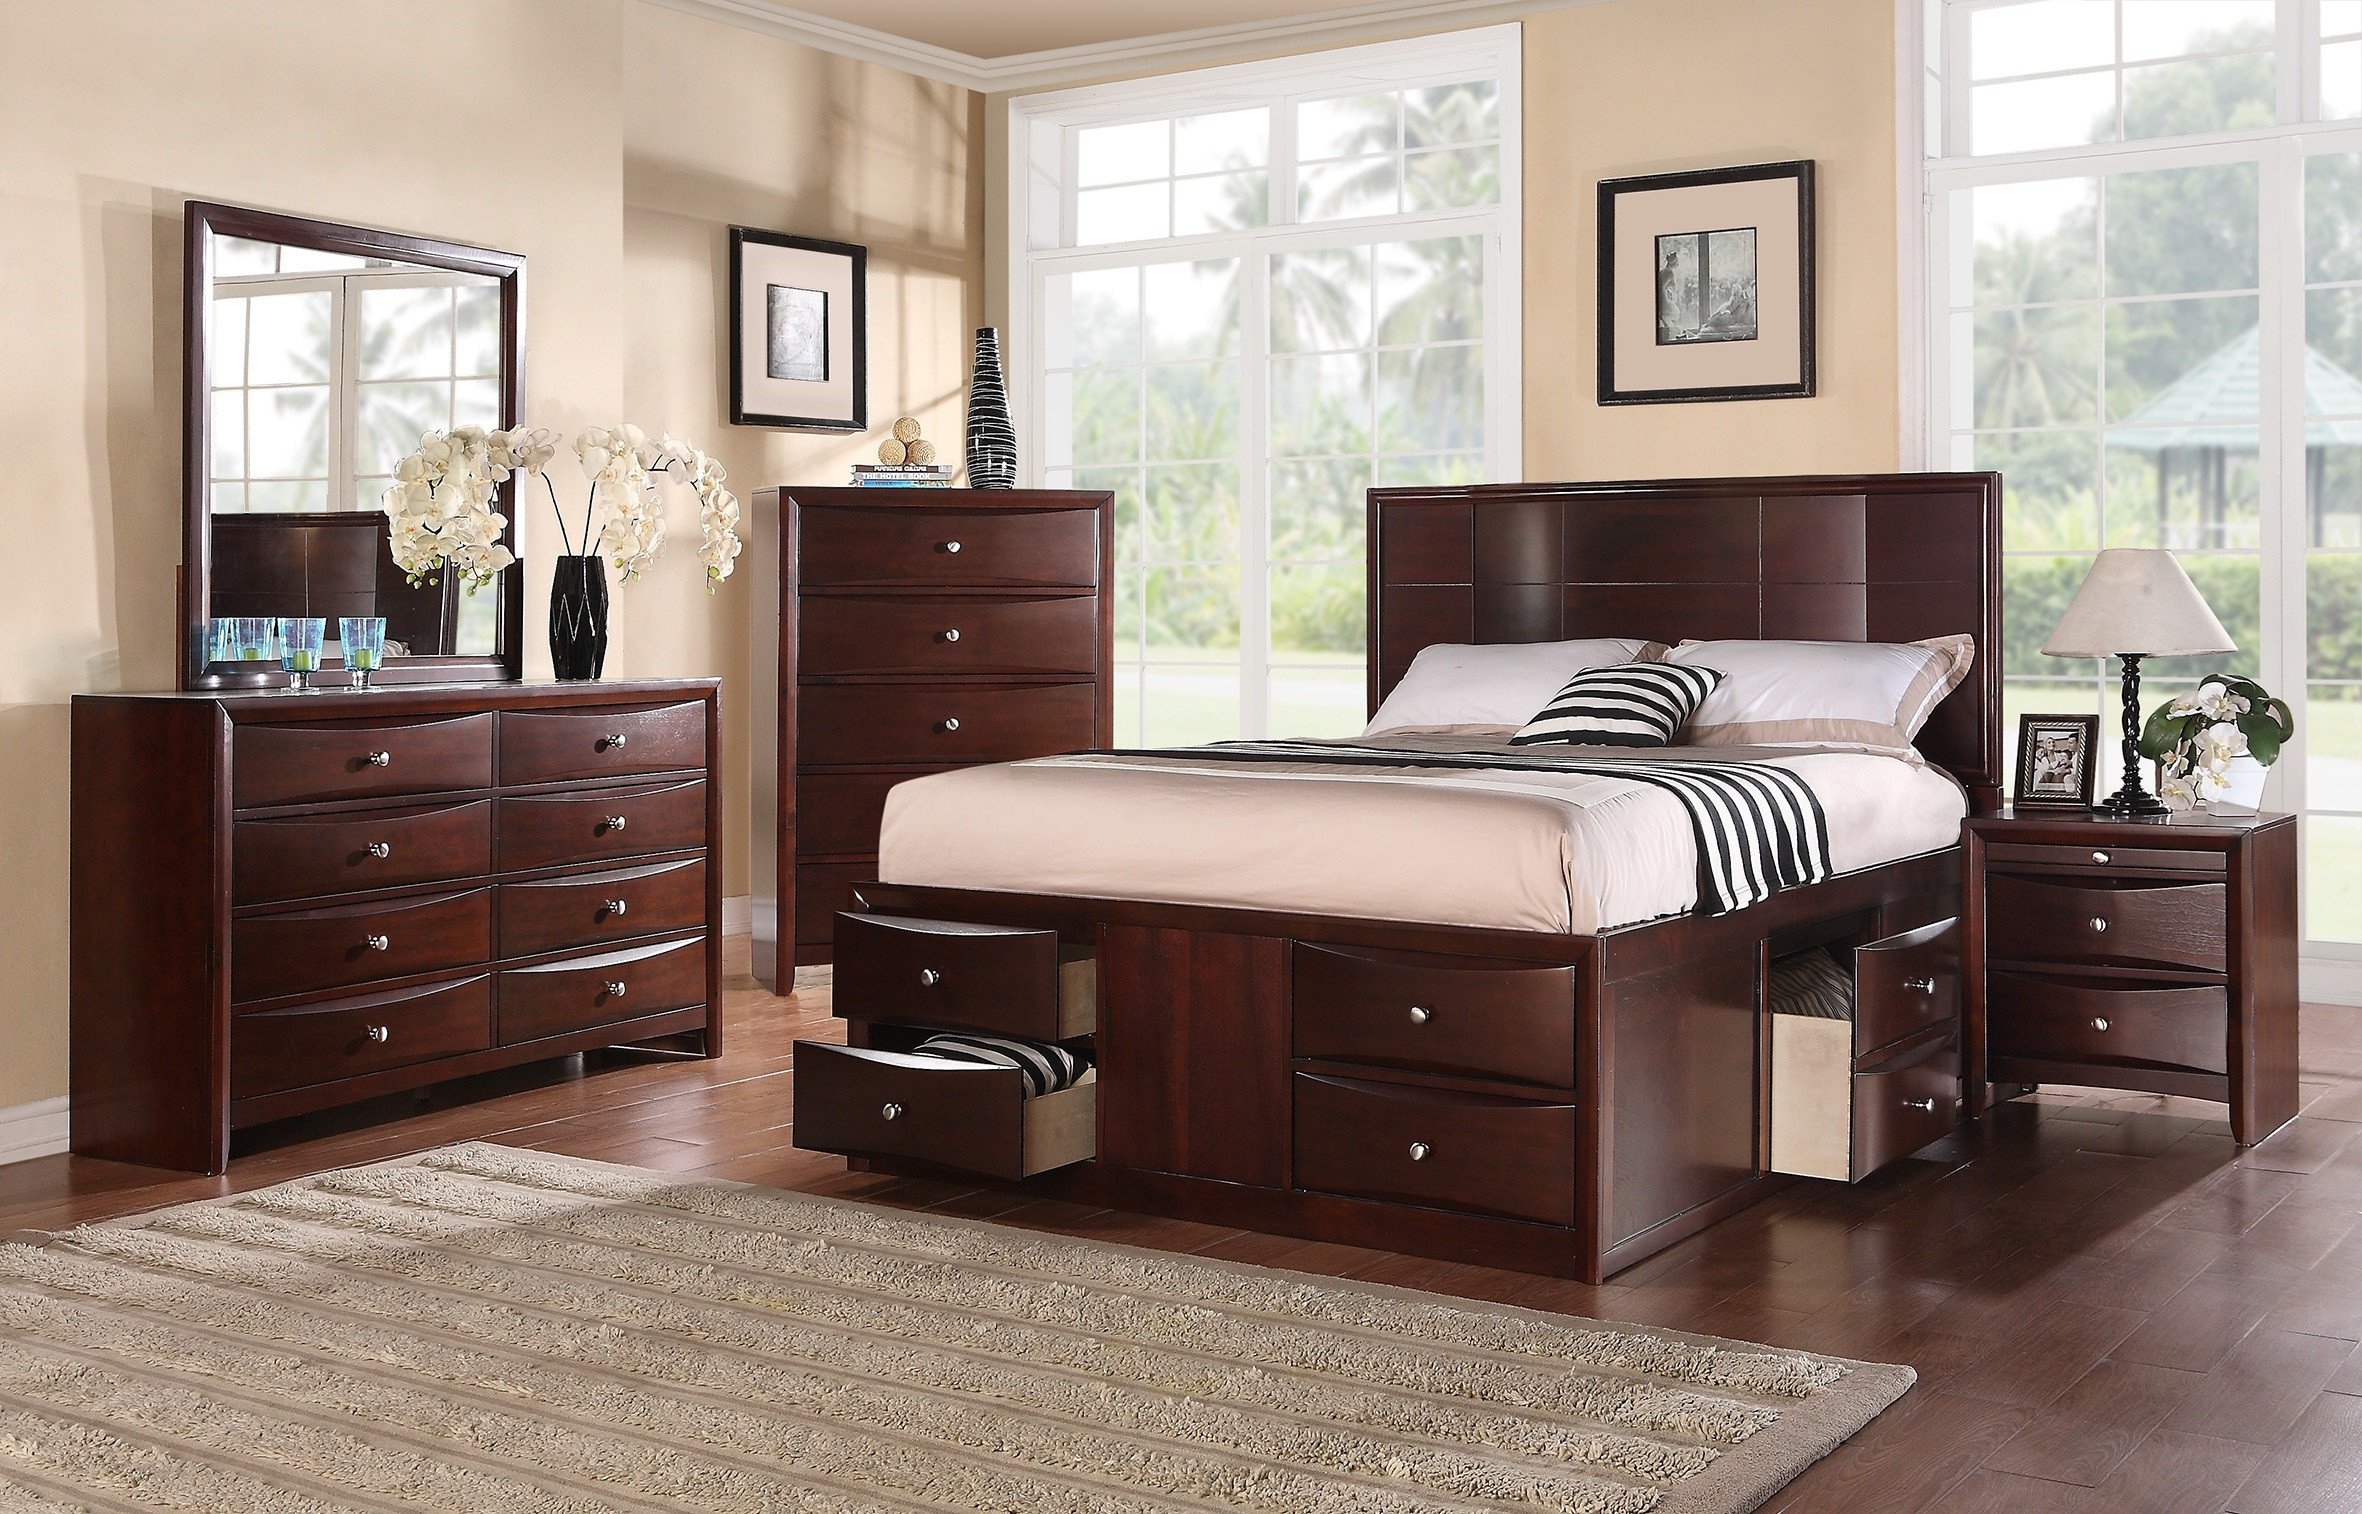 King Size Storage Bedroom Set
 Elegant innovative Bedroom Furniture Storage Drawers FB